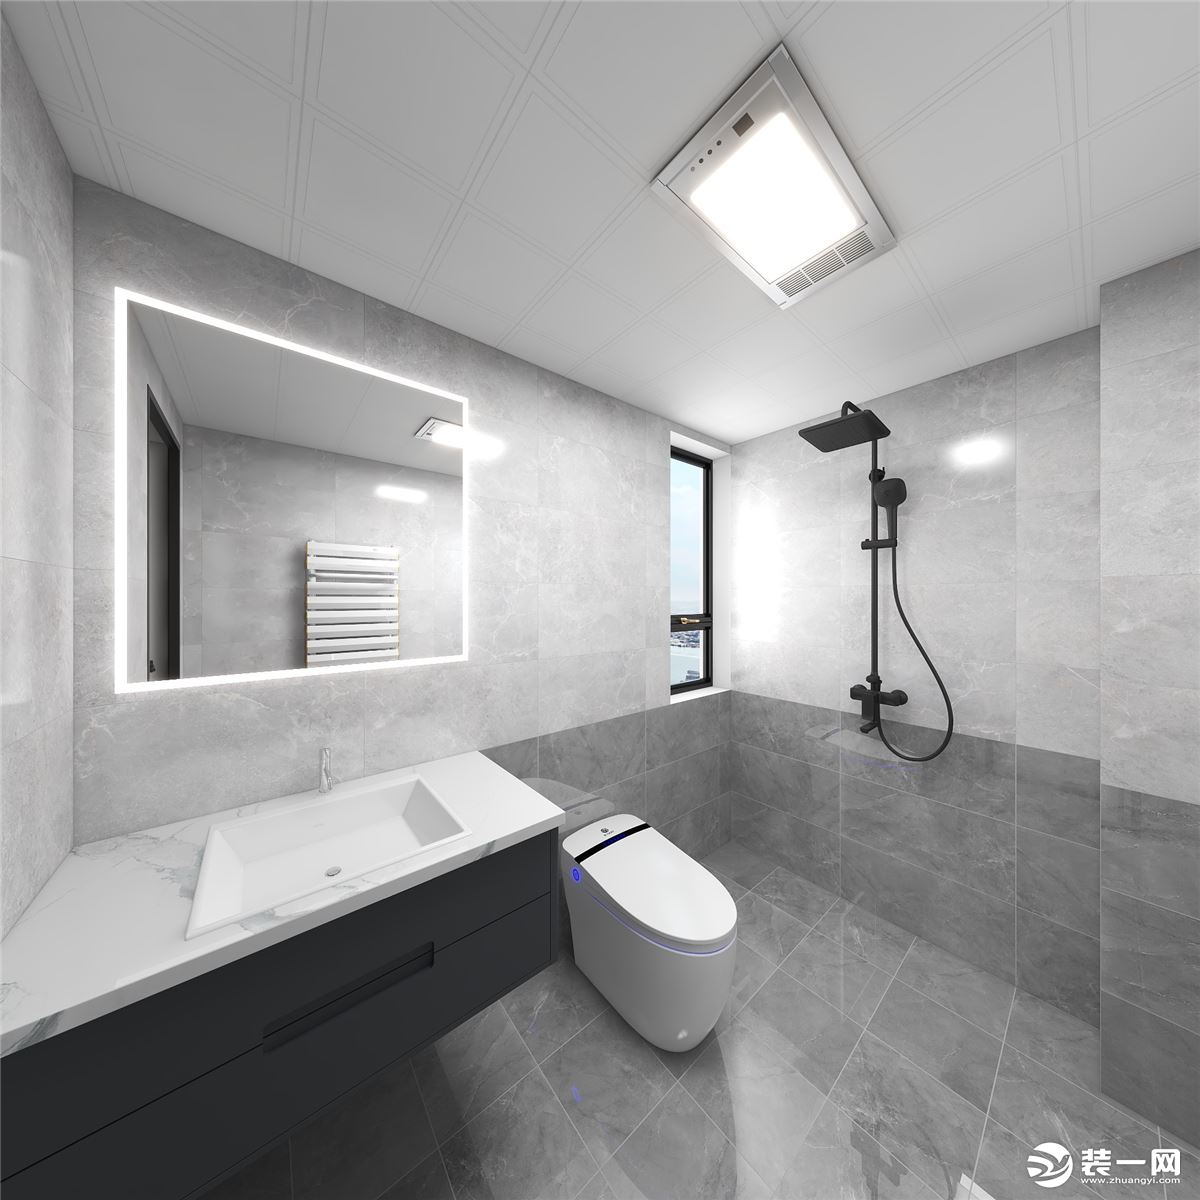 卫生间墙面采用对色瓷砖，质感十足，整体空间干净、整洁不失优雅。